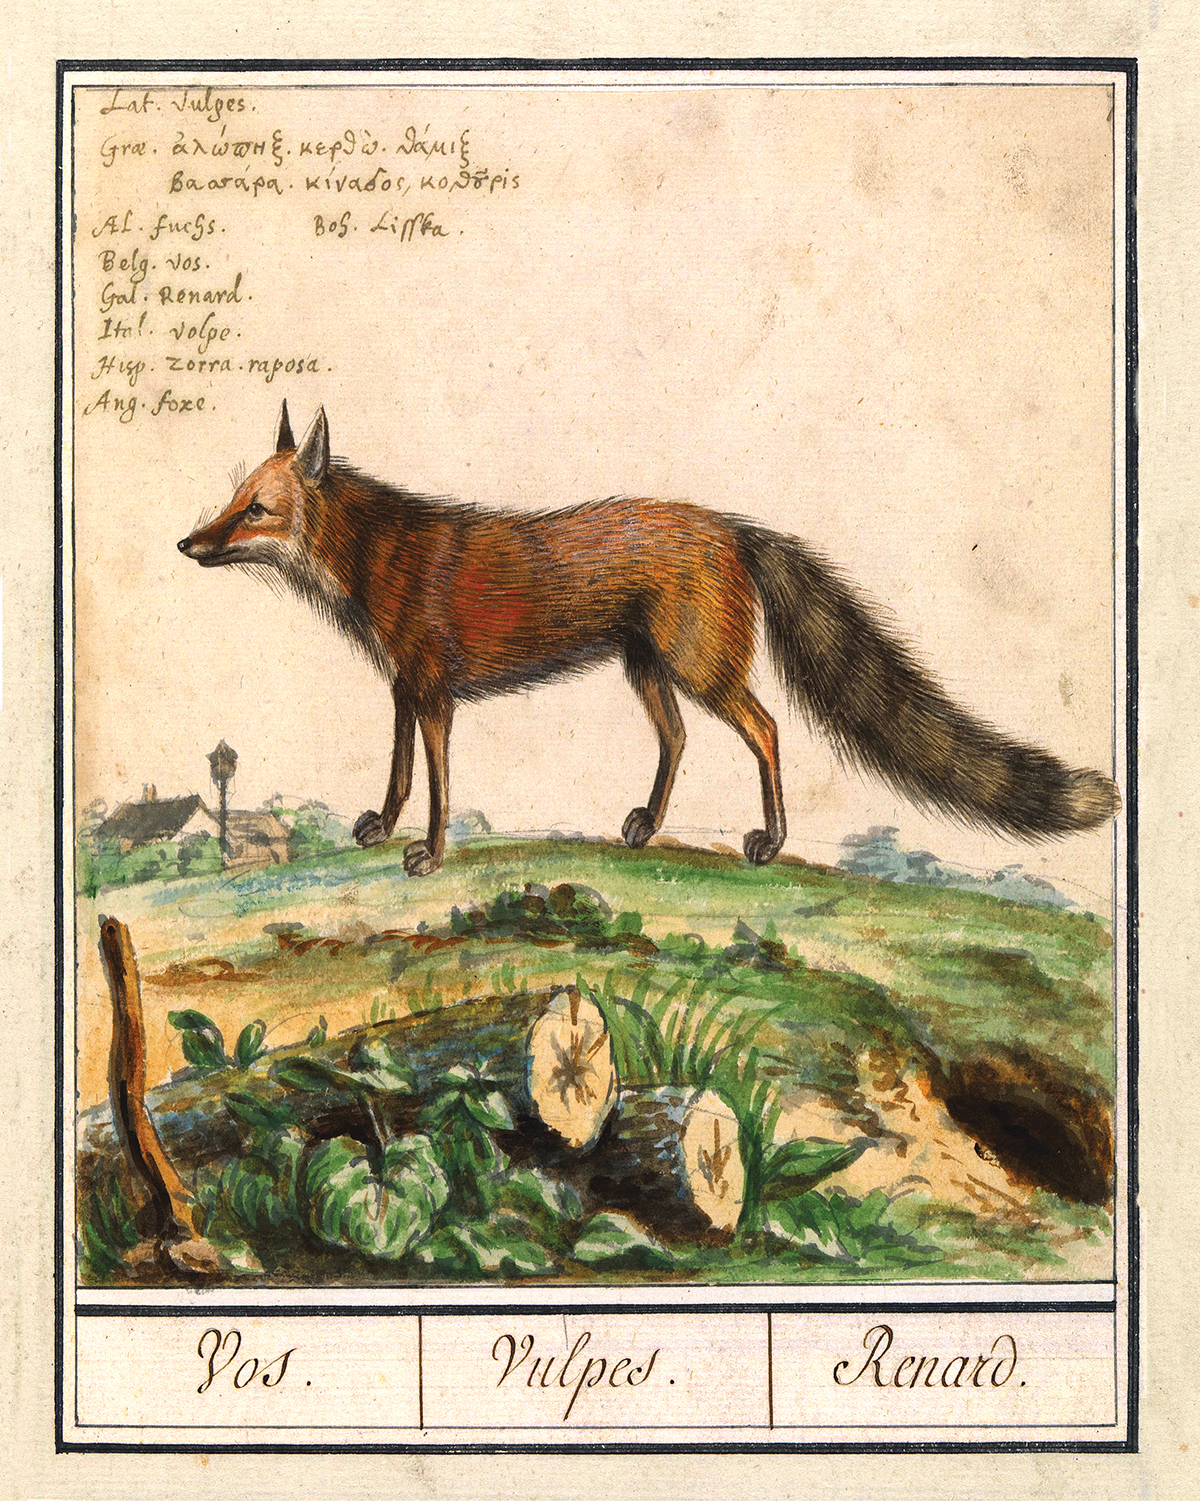 Cabin/Lodge Botanical/Zoological Fox Illustration Framed Print Behind G ...